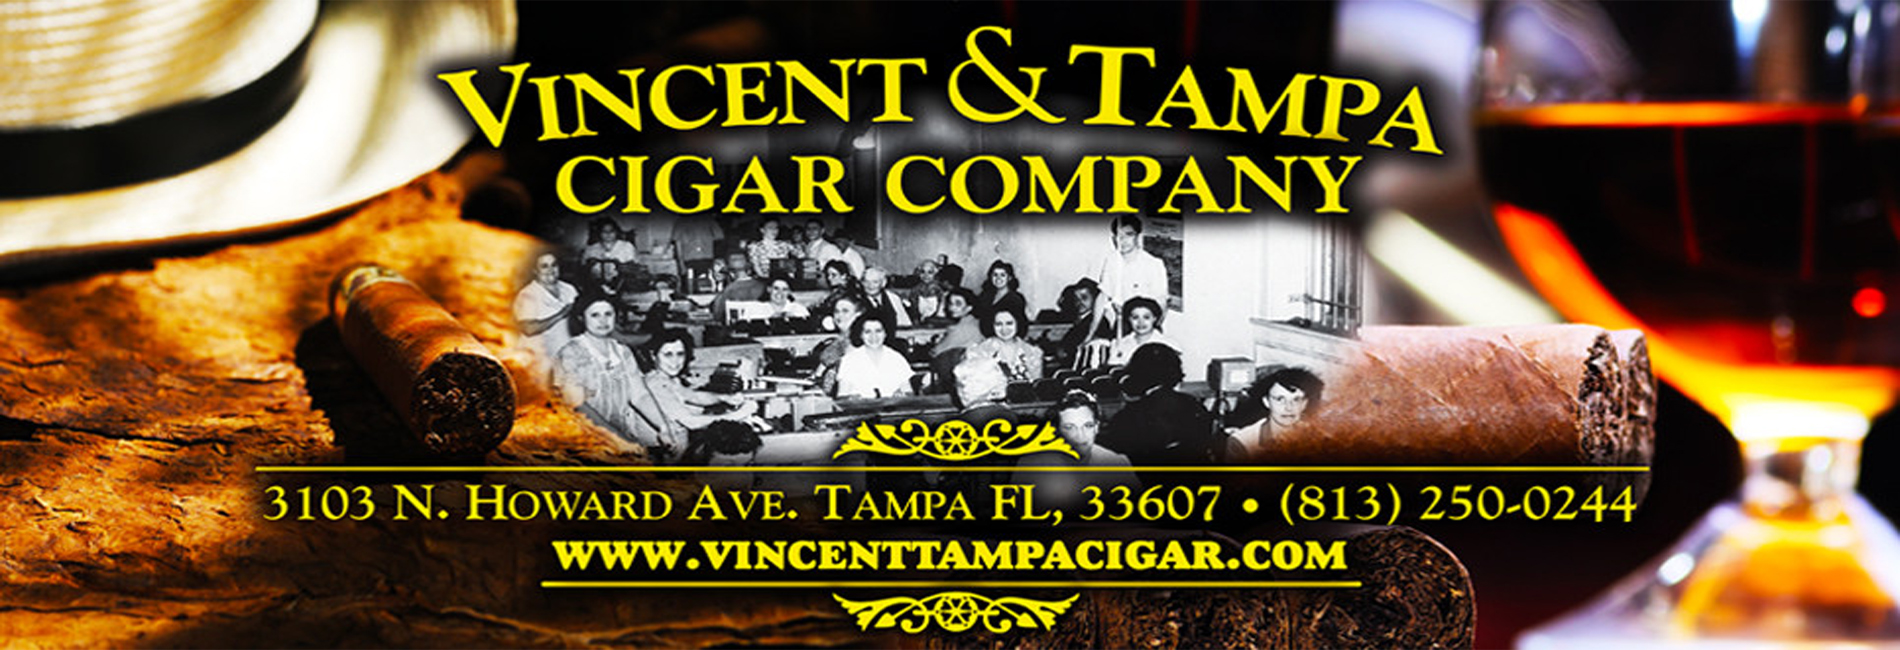 Vincent-Tampa-Cigar-Company-Tampa-FL